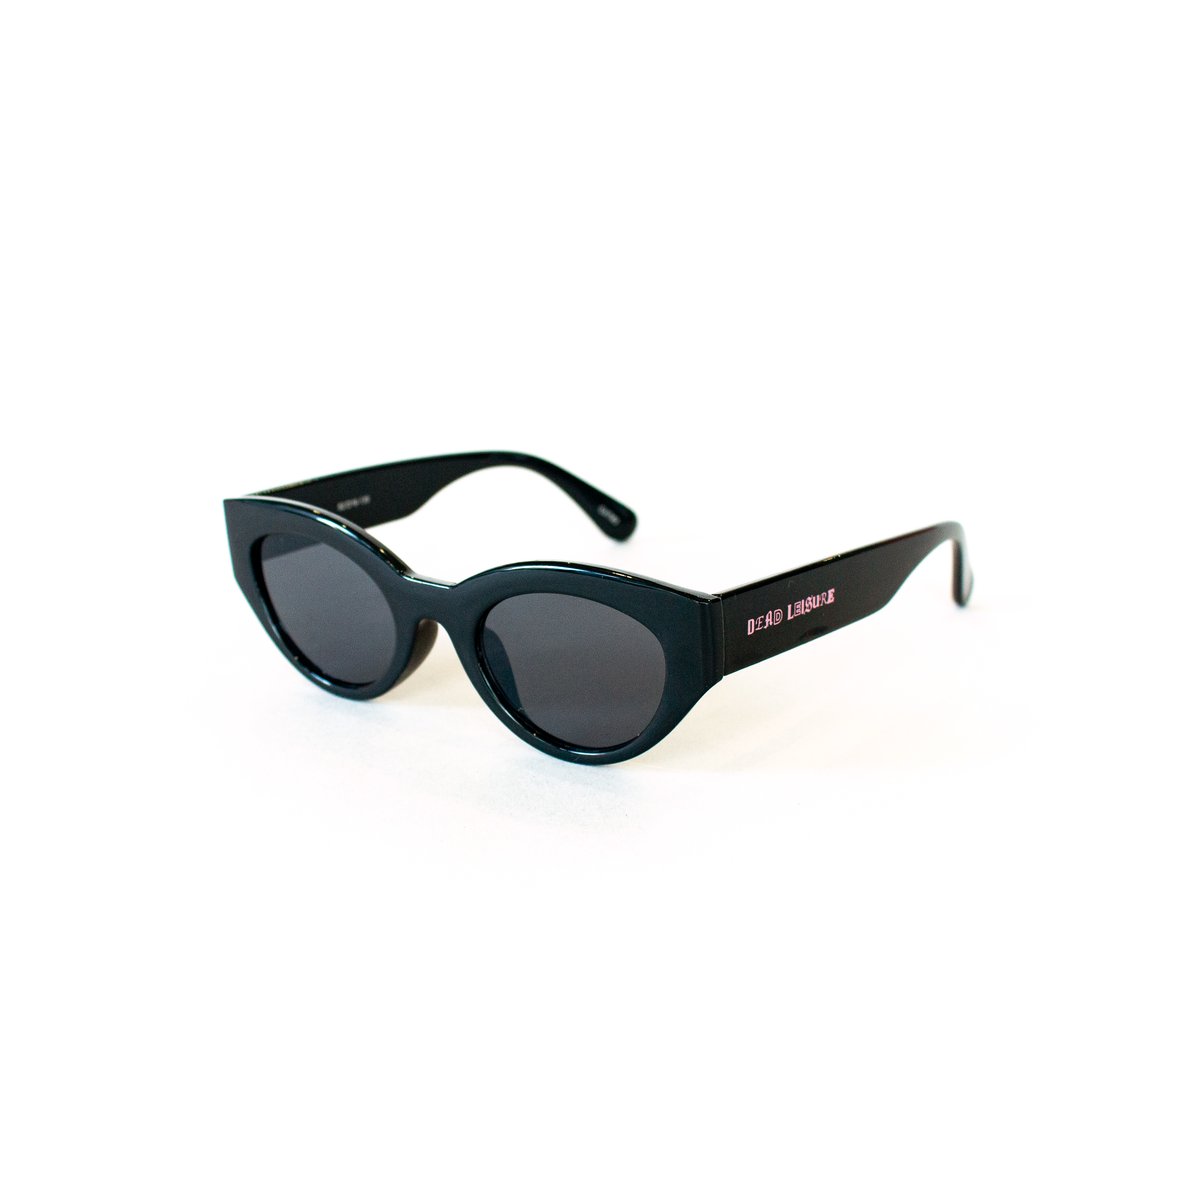 Blinkers Sunglasses - Black